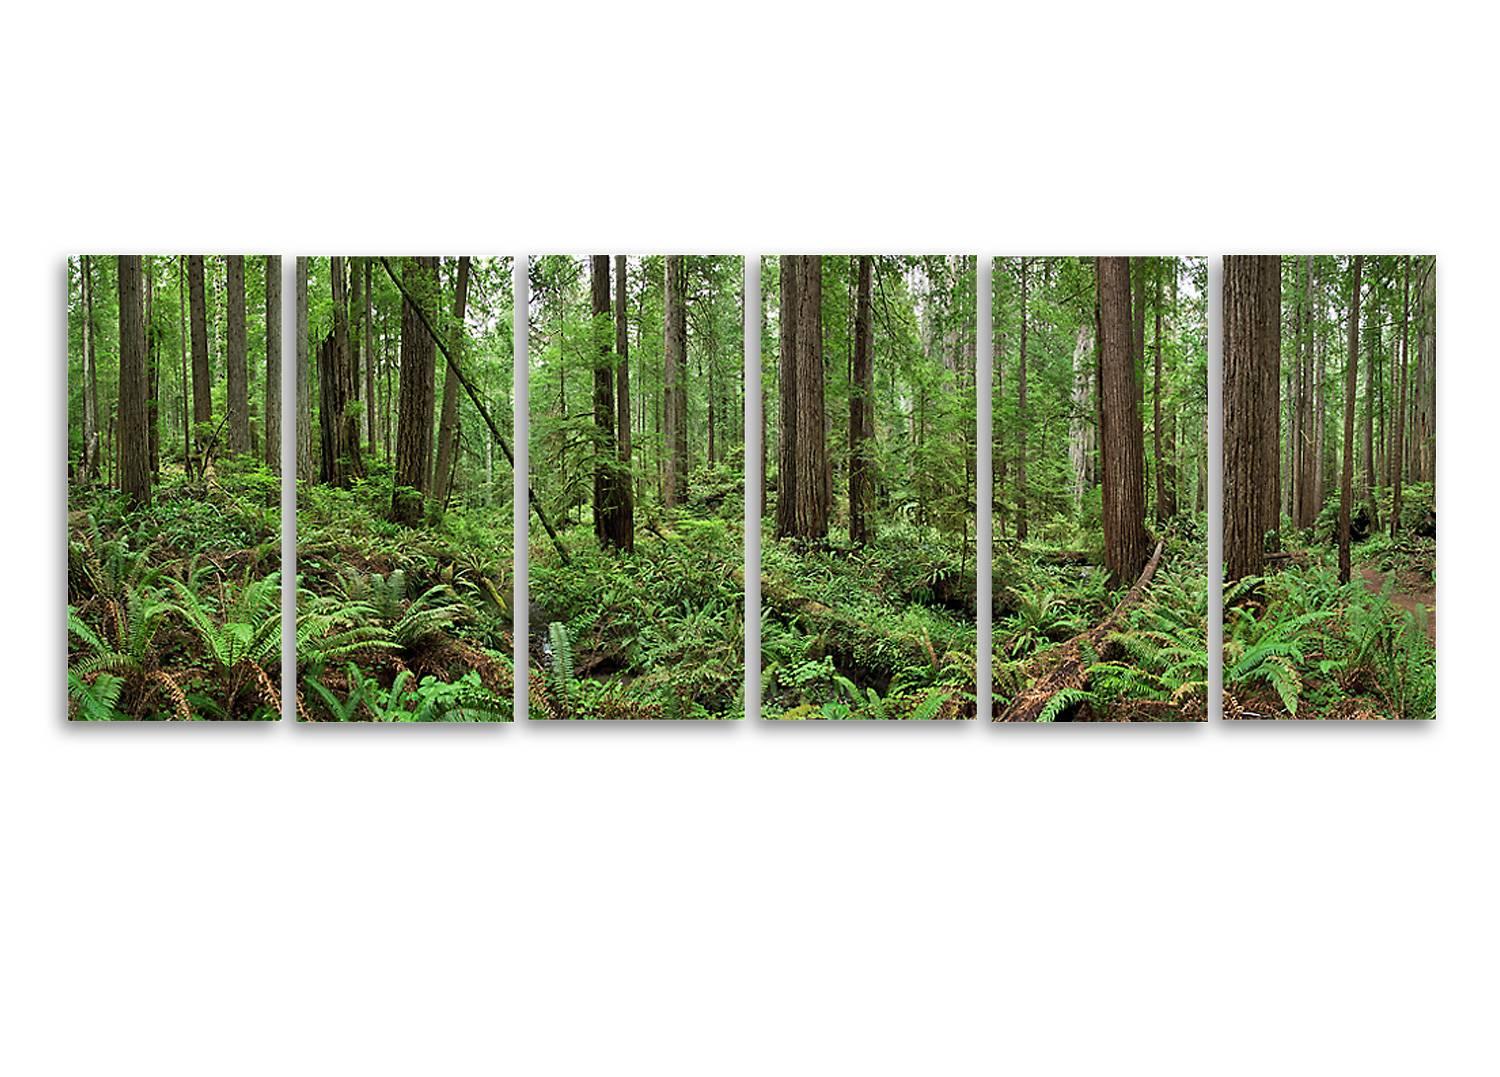 Redwoods - großformatige Naturbeobachtung in sechs Einzelaufnahmen 